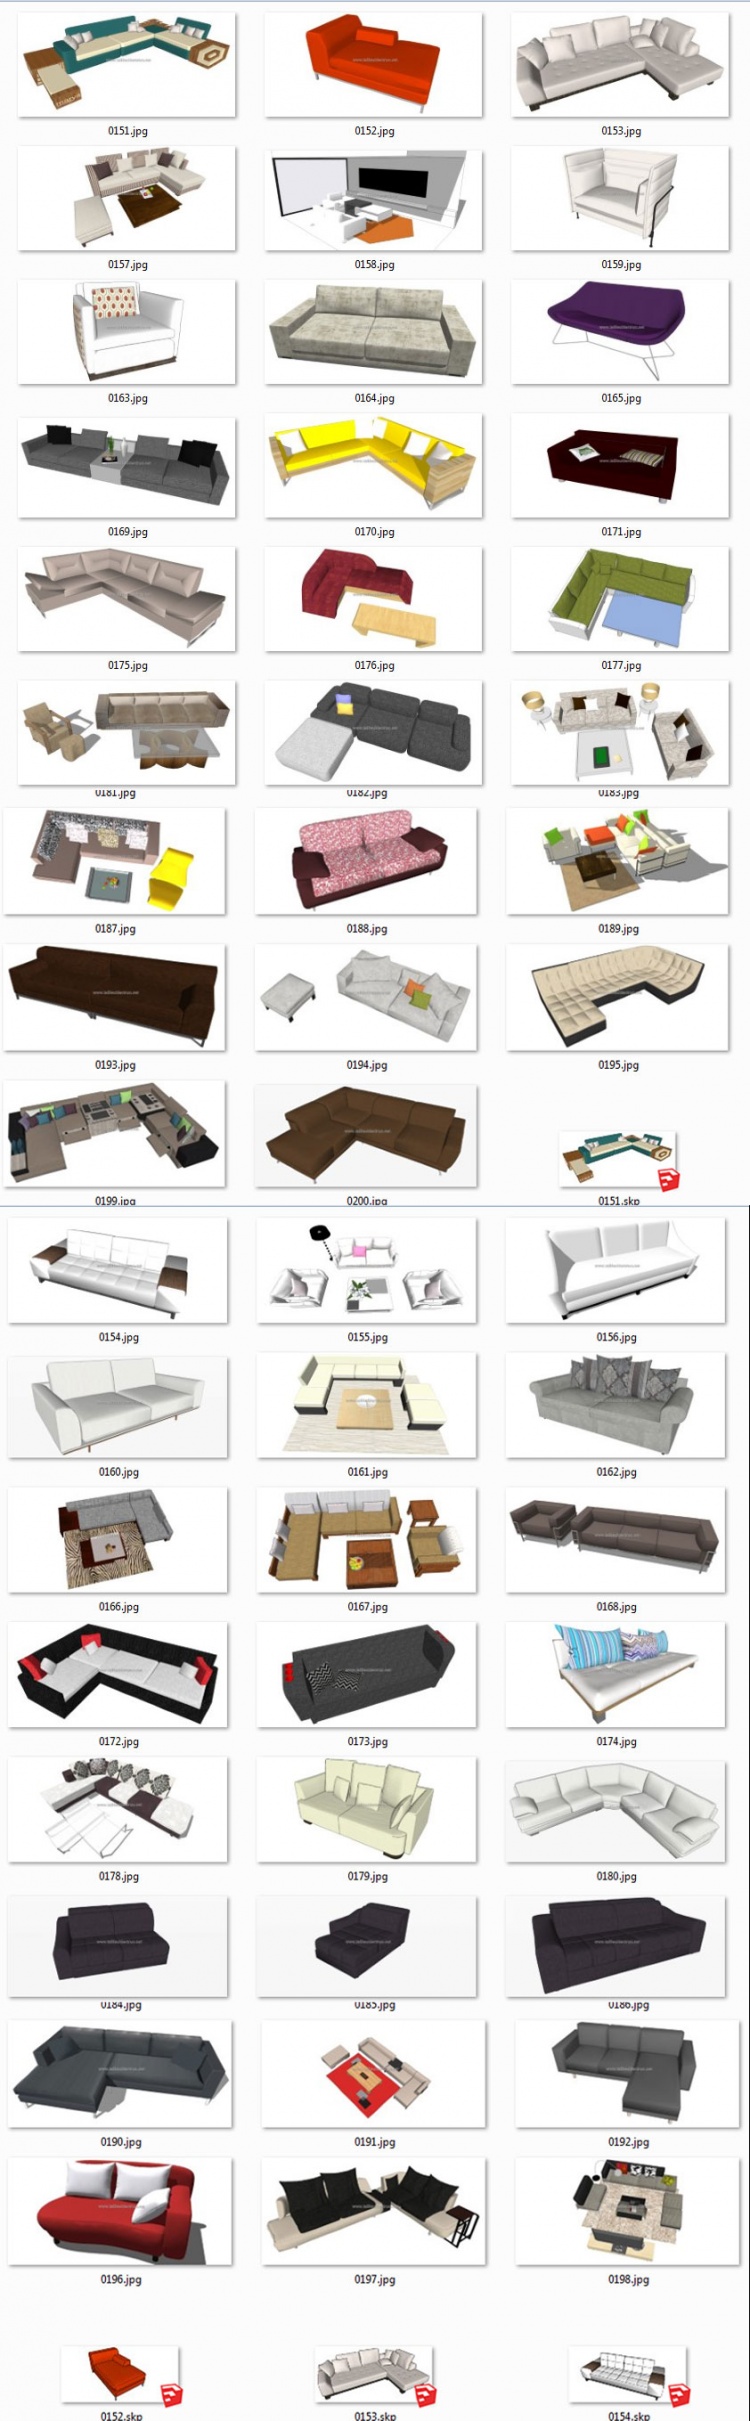 Thư viện Sketchup - Tổng hợp 50 Model Ghế Sofa các loại chất lượng cao 005